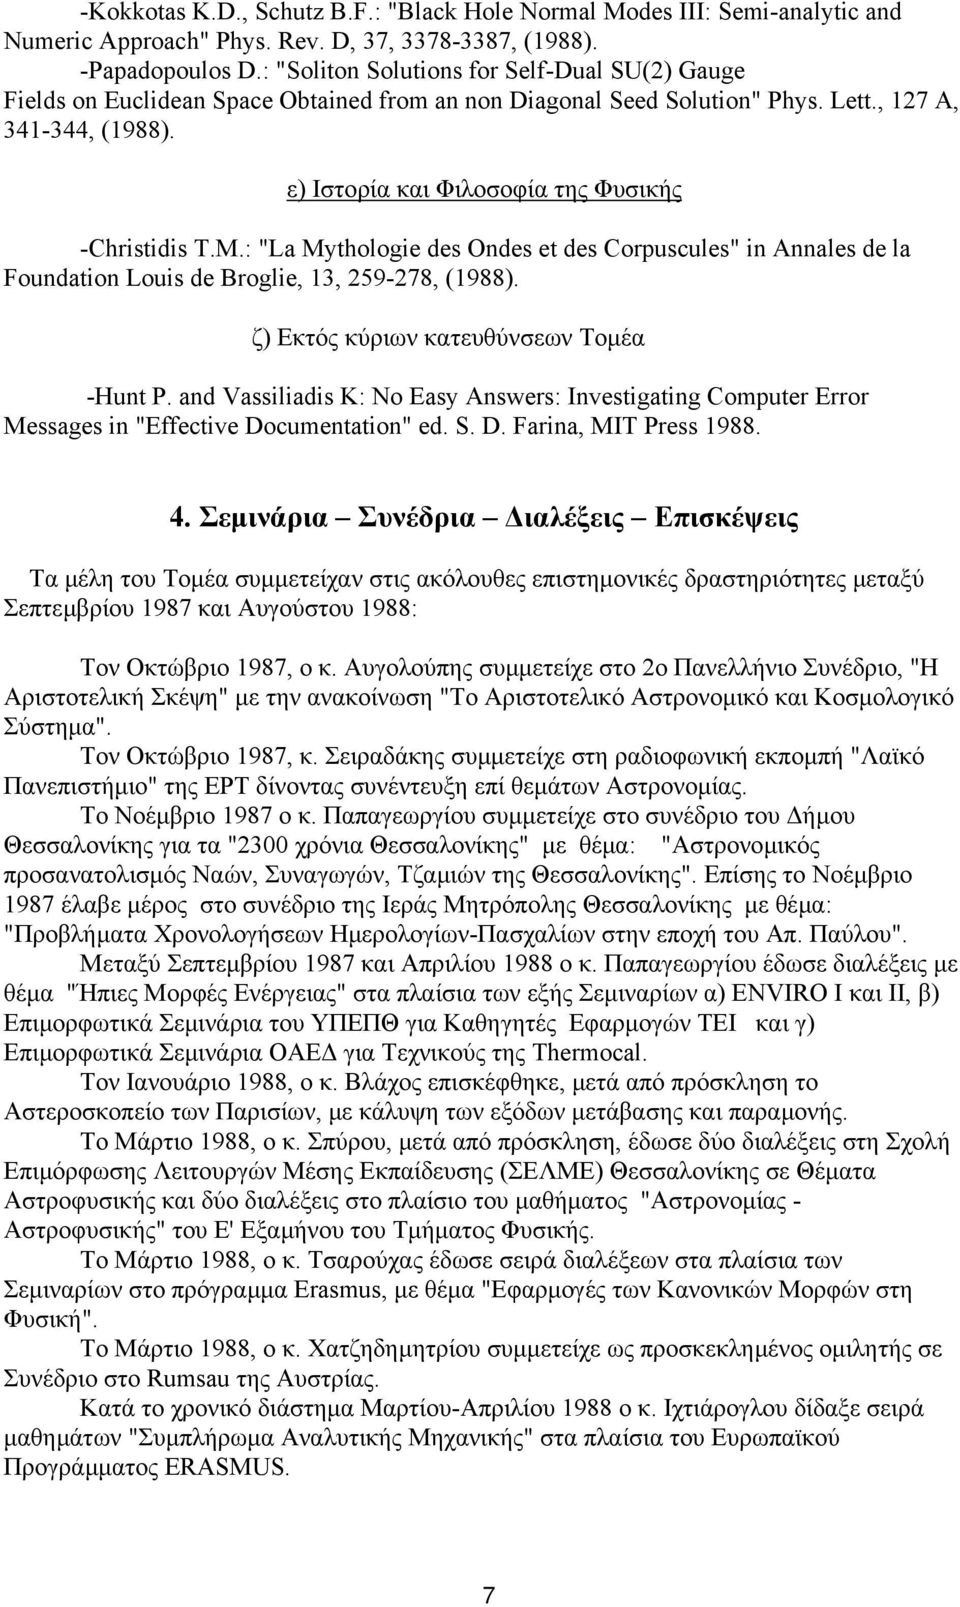 ε) Ιστορία και Φιλοσοφία της Φυσικής -Christidis T.M.: "La Mythologie des Ondes et des Corpuscules" in Annales de la Foundation Louis de Broglie, 13, 259-278, (1988).